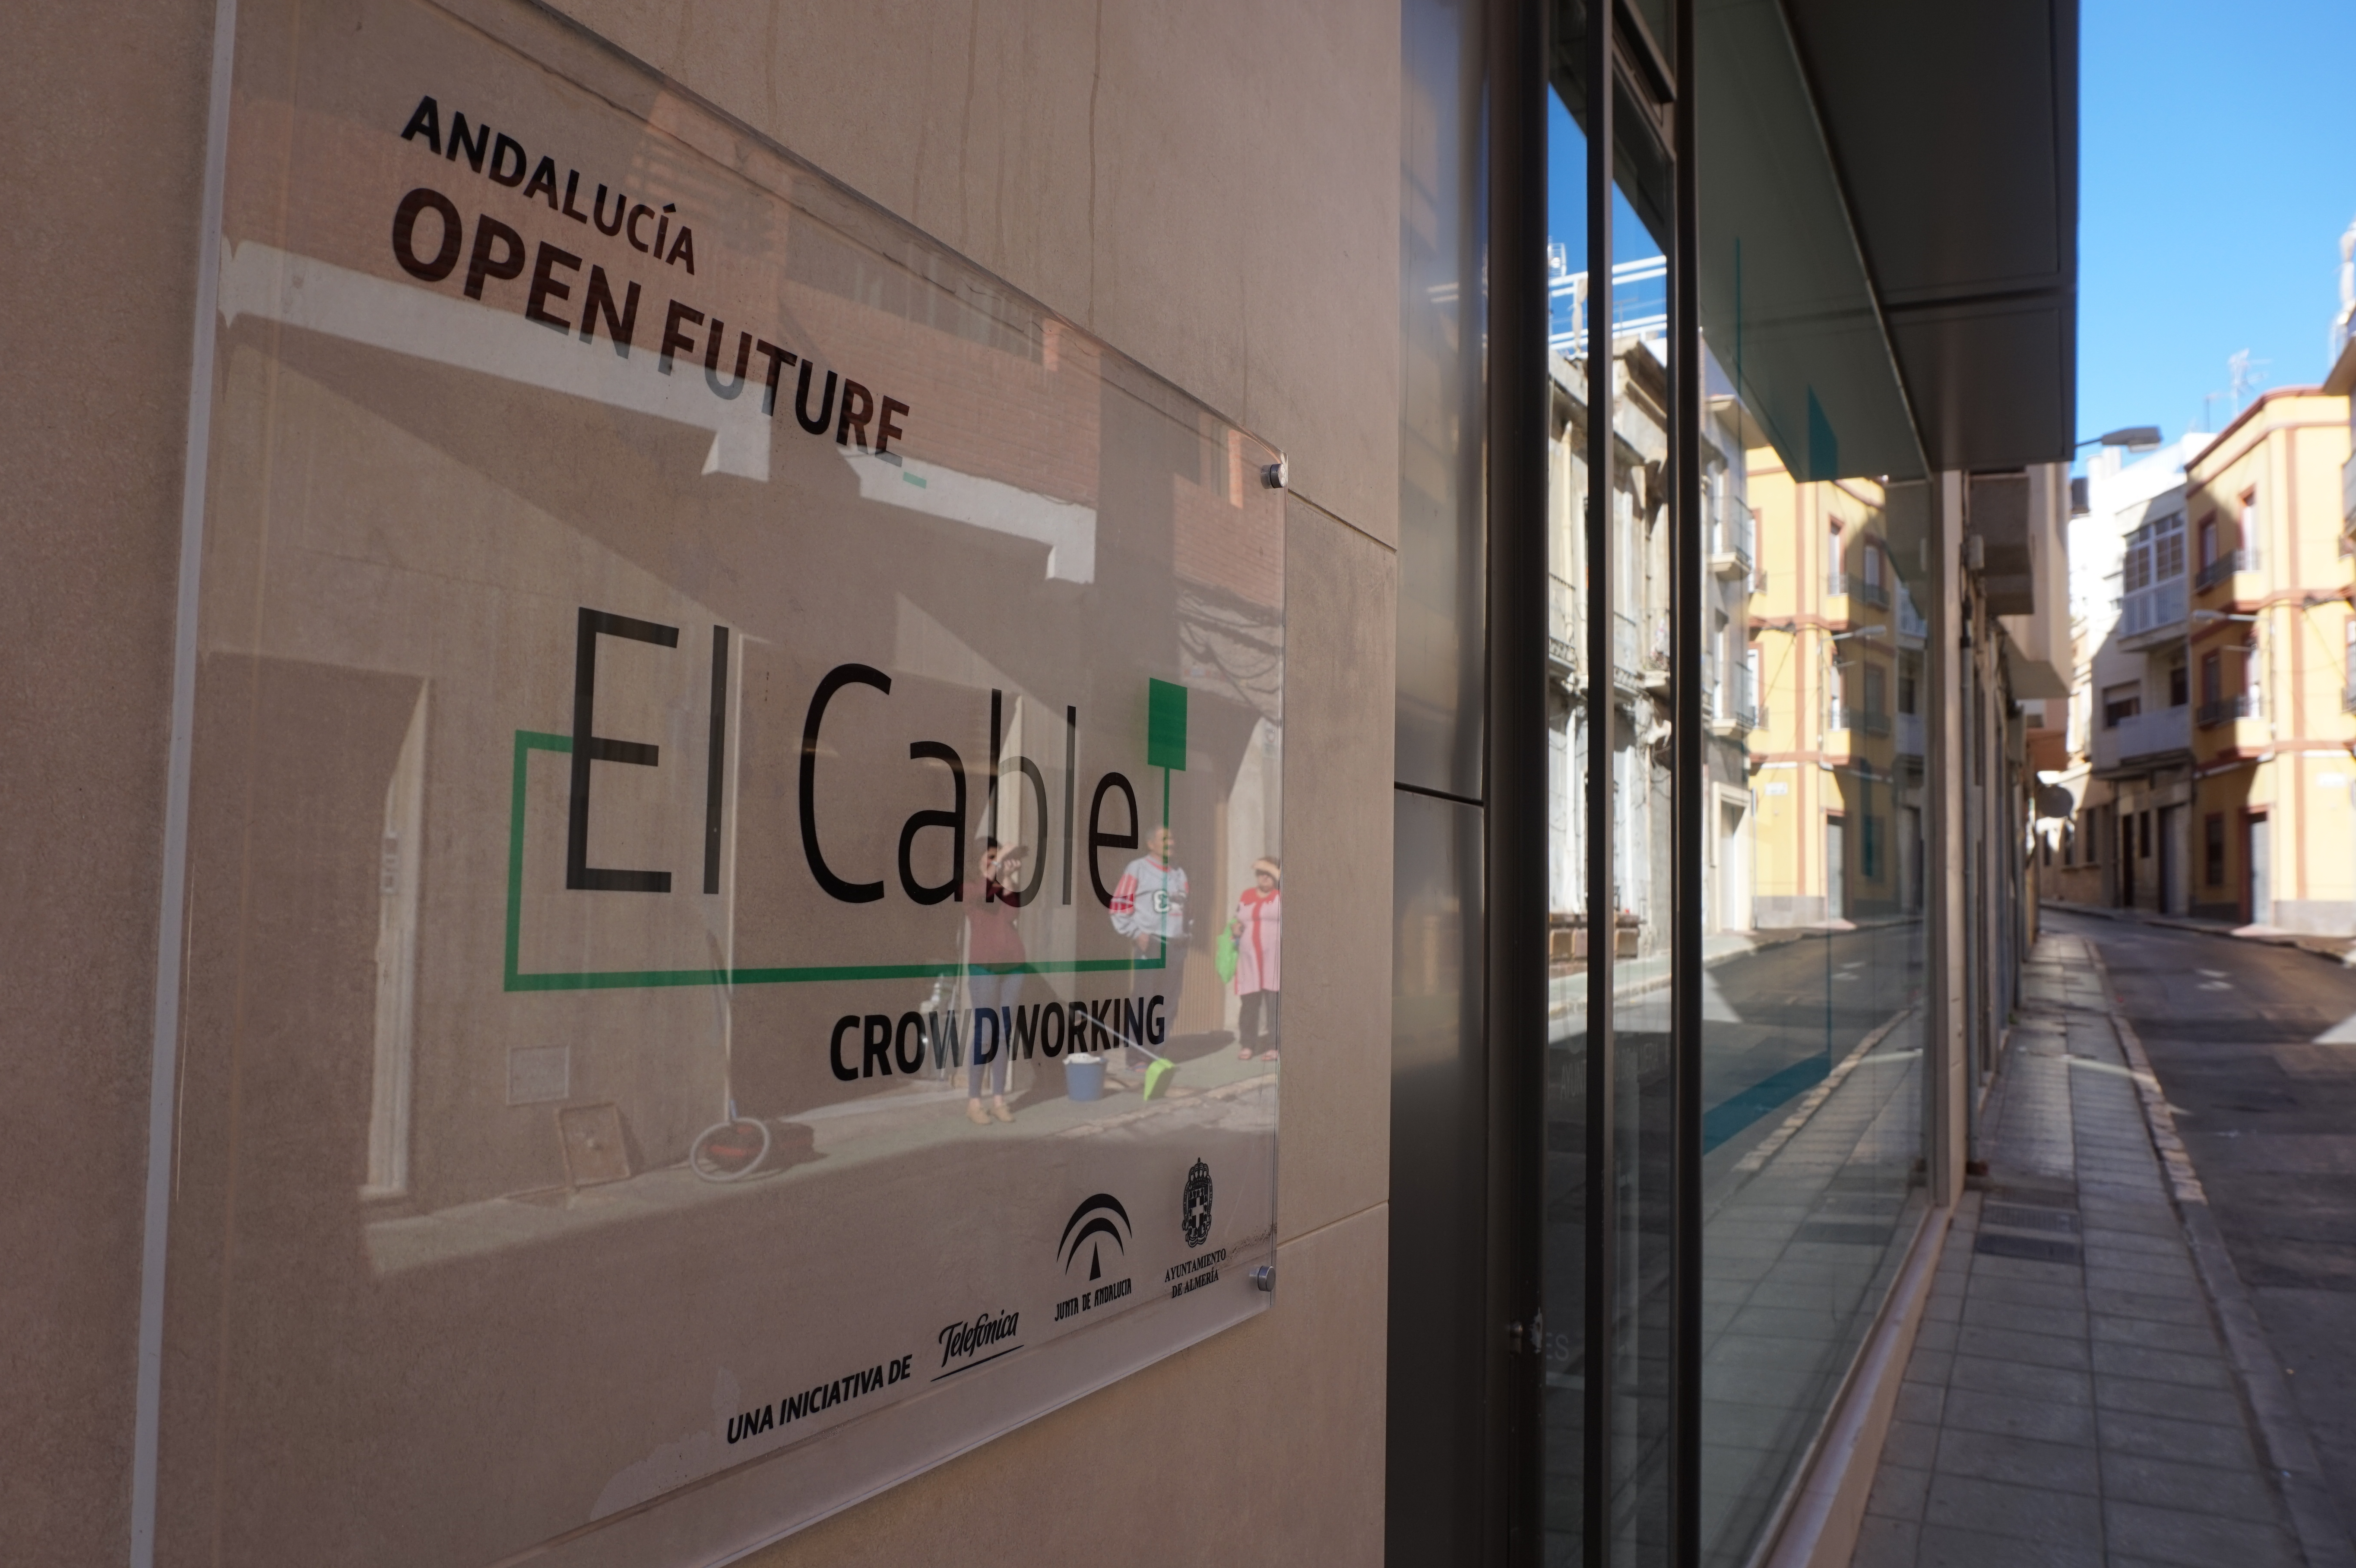 El Cable -espacio de crowdworking de Andalucía Open Future en Almería